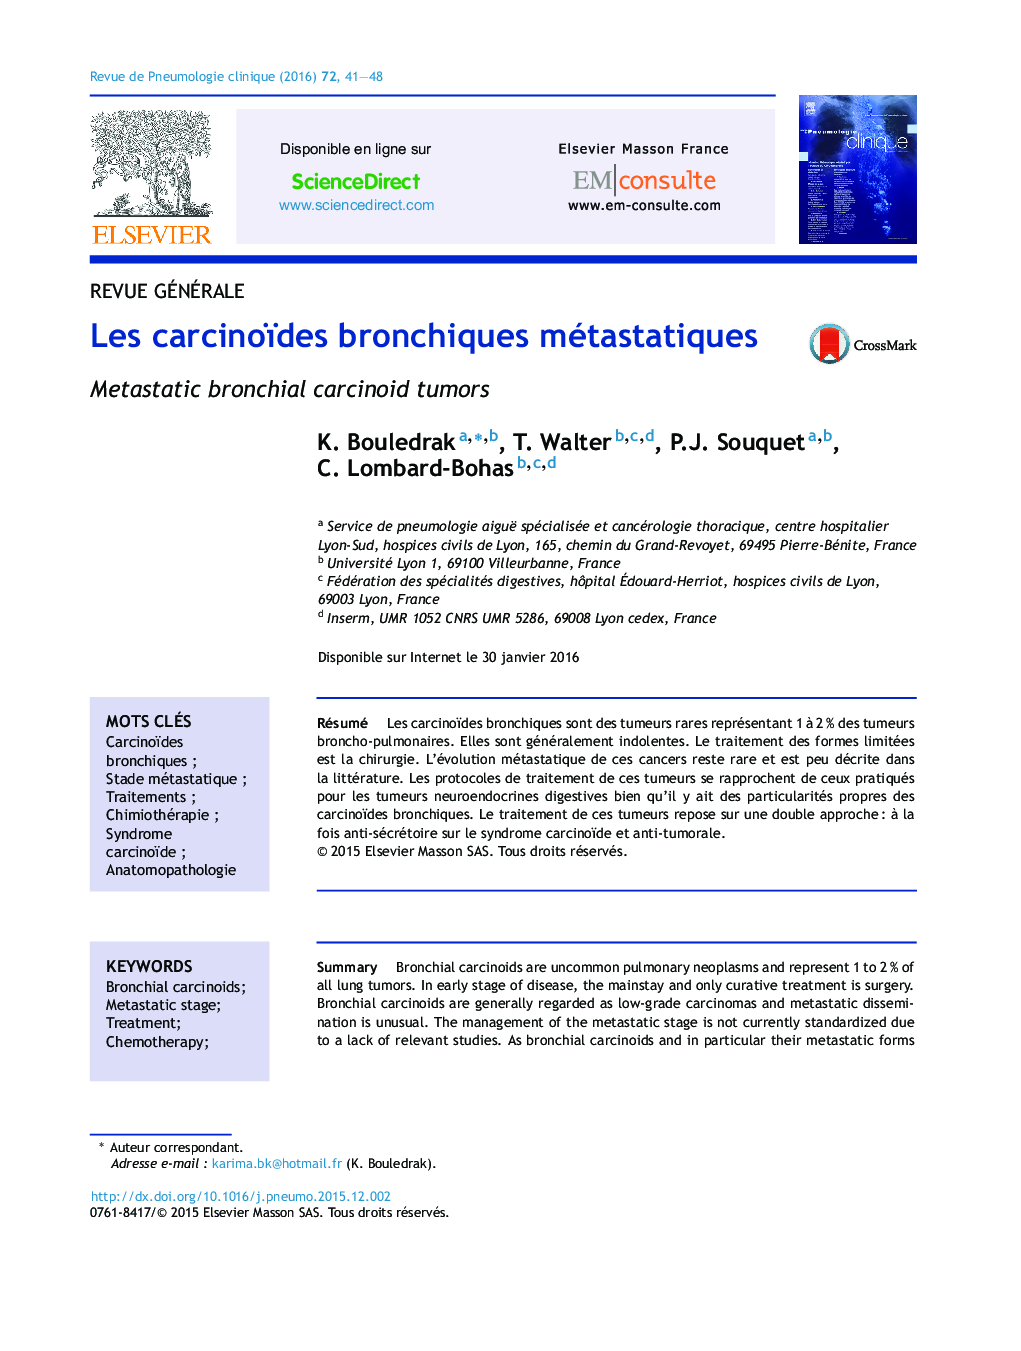 Les carcinoïdes bronchiques métastatiques